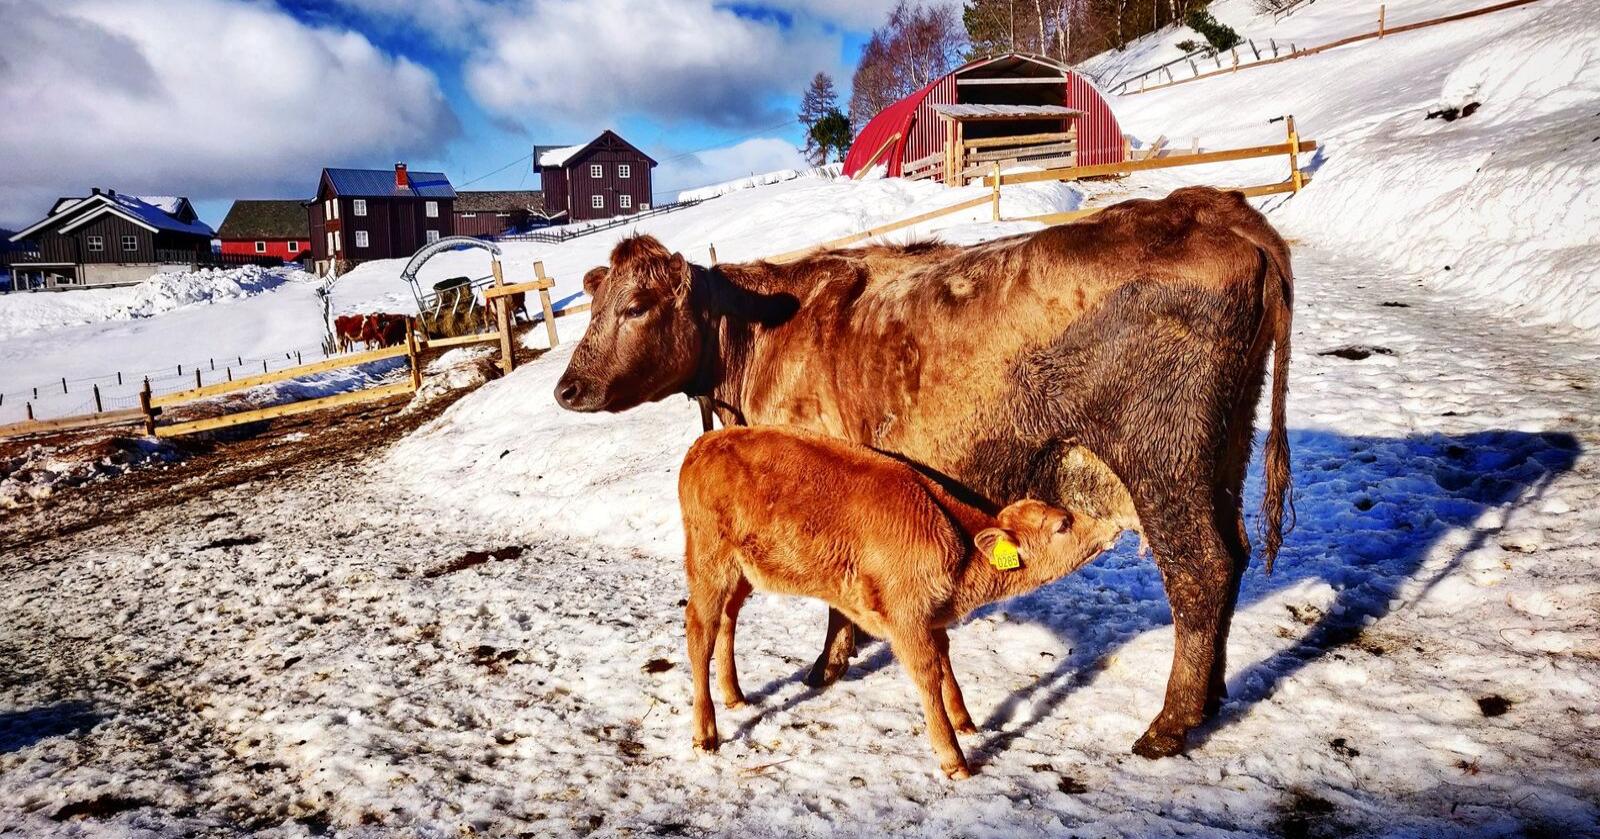 SAMMEN: Melkekyra og kalvene går sammen ute på melkebruket Sygarden i Vang. - Det er en radikal forbedring av dyrevelferden, mener Björn Nylander.